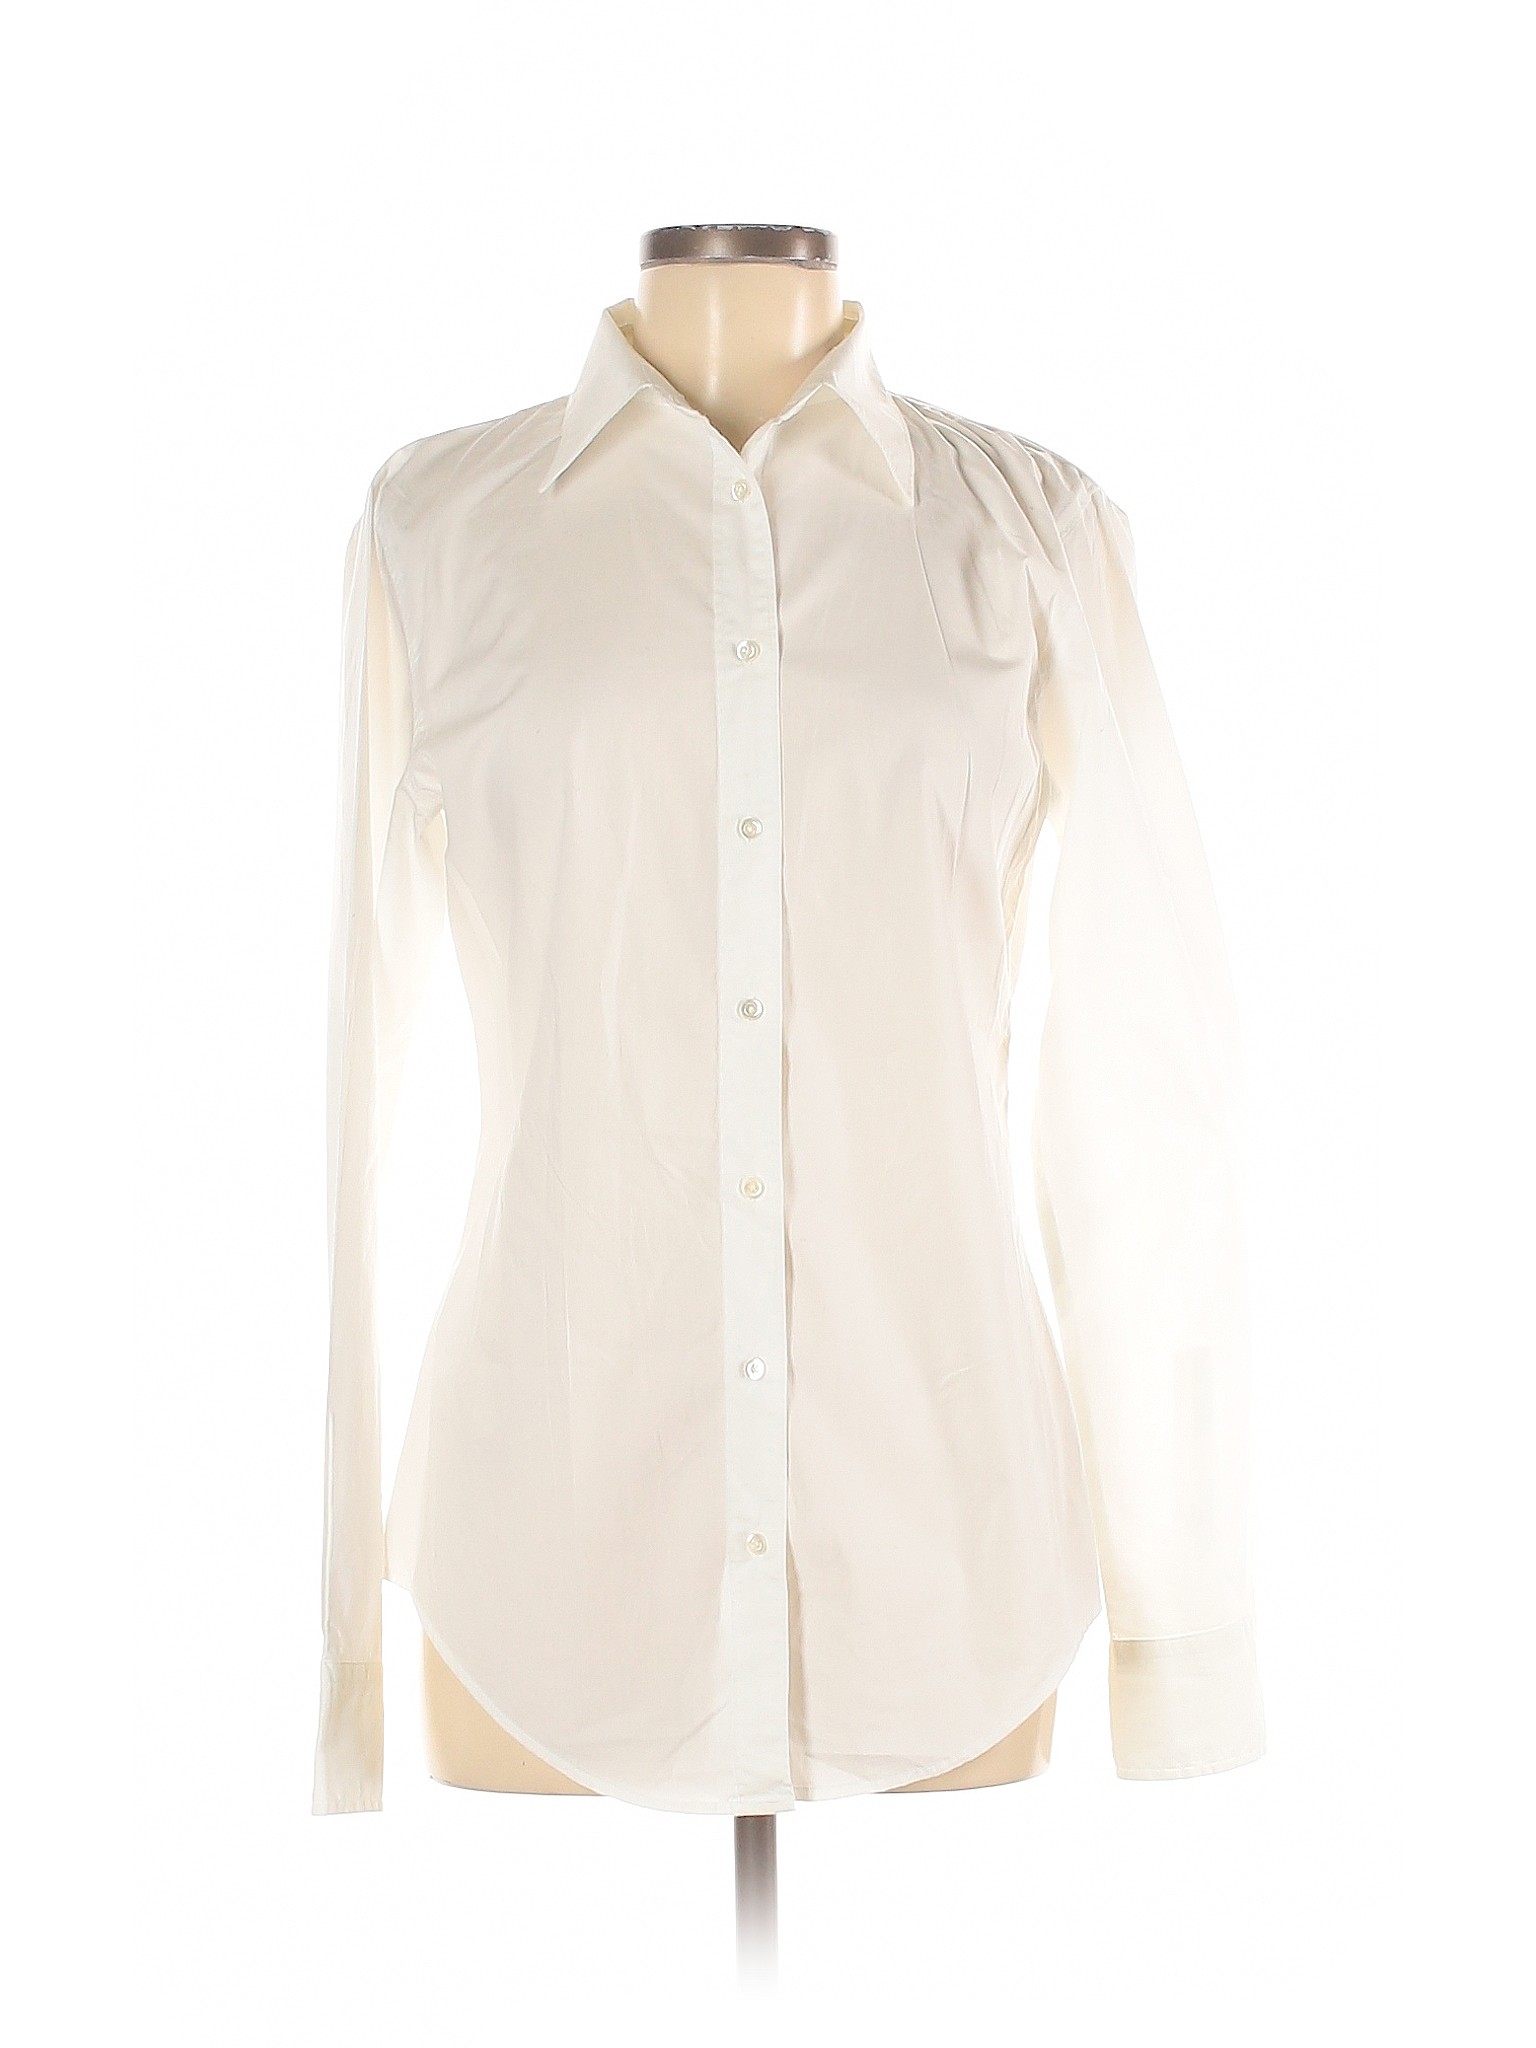 Gap Women Ivory Long Sleeve Button-Down Shirt 8 Tall | eBay